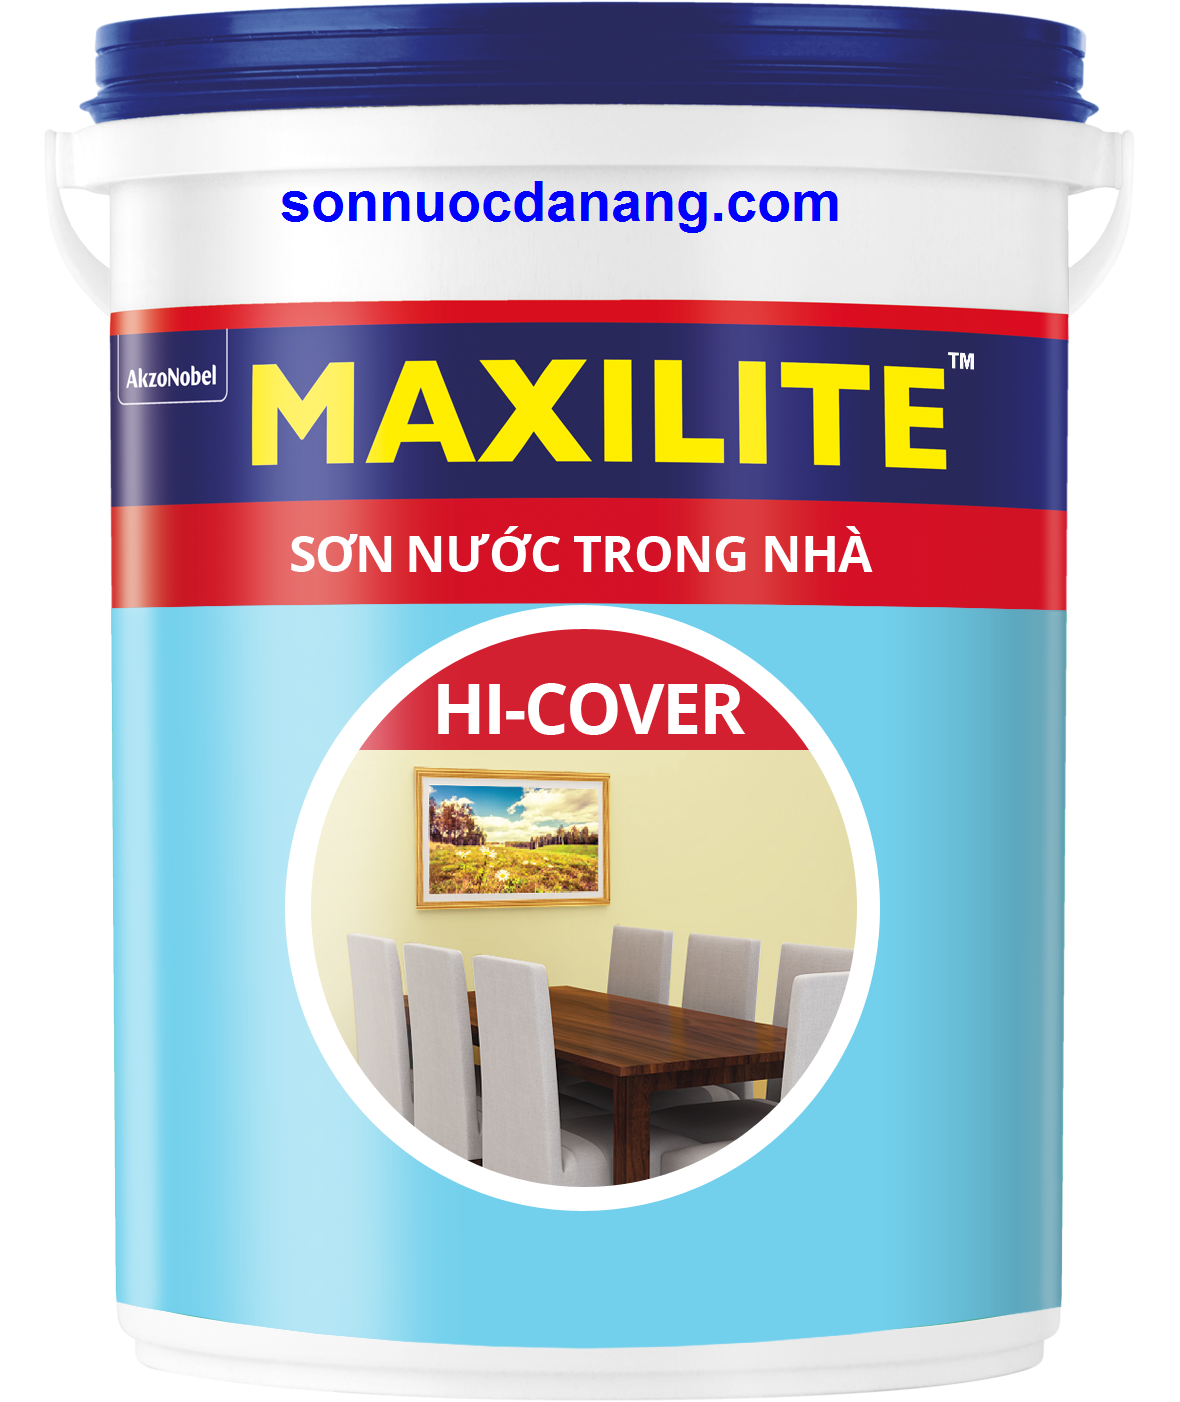 SƠN MAXILITE TRONG NHÀ HI-COVER tại Đà Nẵng, Hồ Chí Minh, Hà Nội là sơn nước trong nhà chất lượng tốt giúp đem lại độ phủ tốt. Sơn Nước Trong Nhà Maxilite Hi-Cover có nhiều màu sắc tươi sáng dành cho bạn.